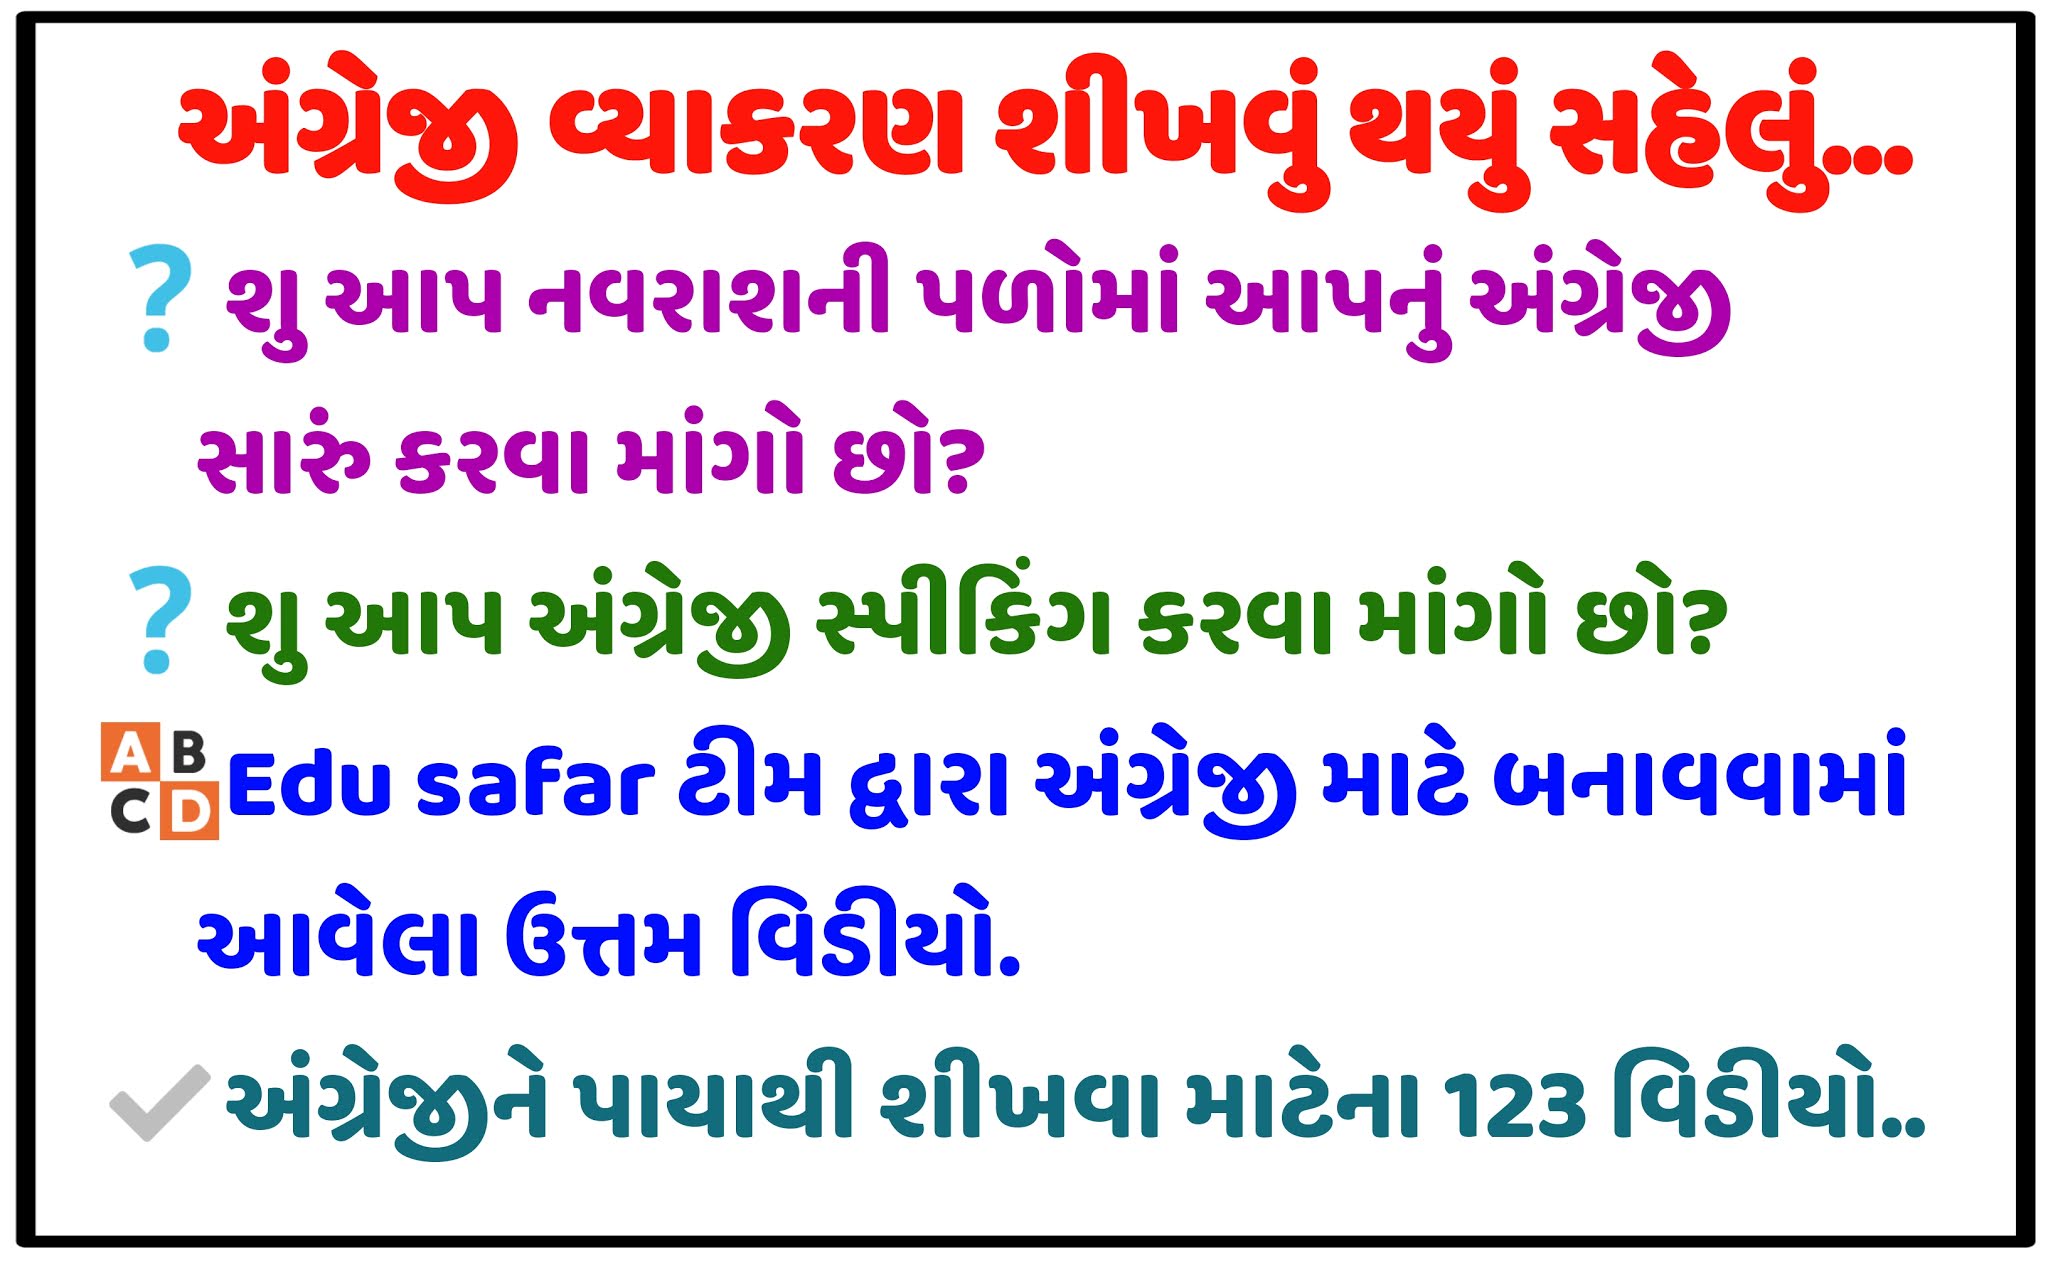 English grammar videos in gujarati ~ Learn English Grammar in Gujarati